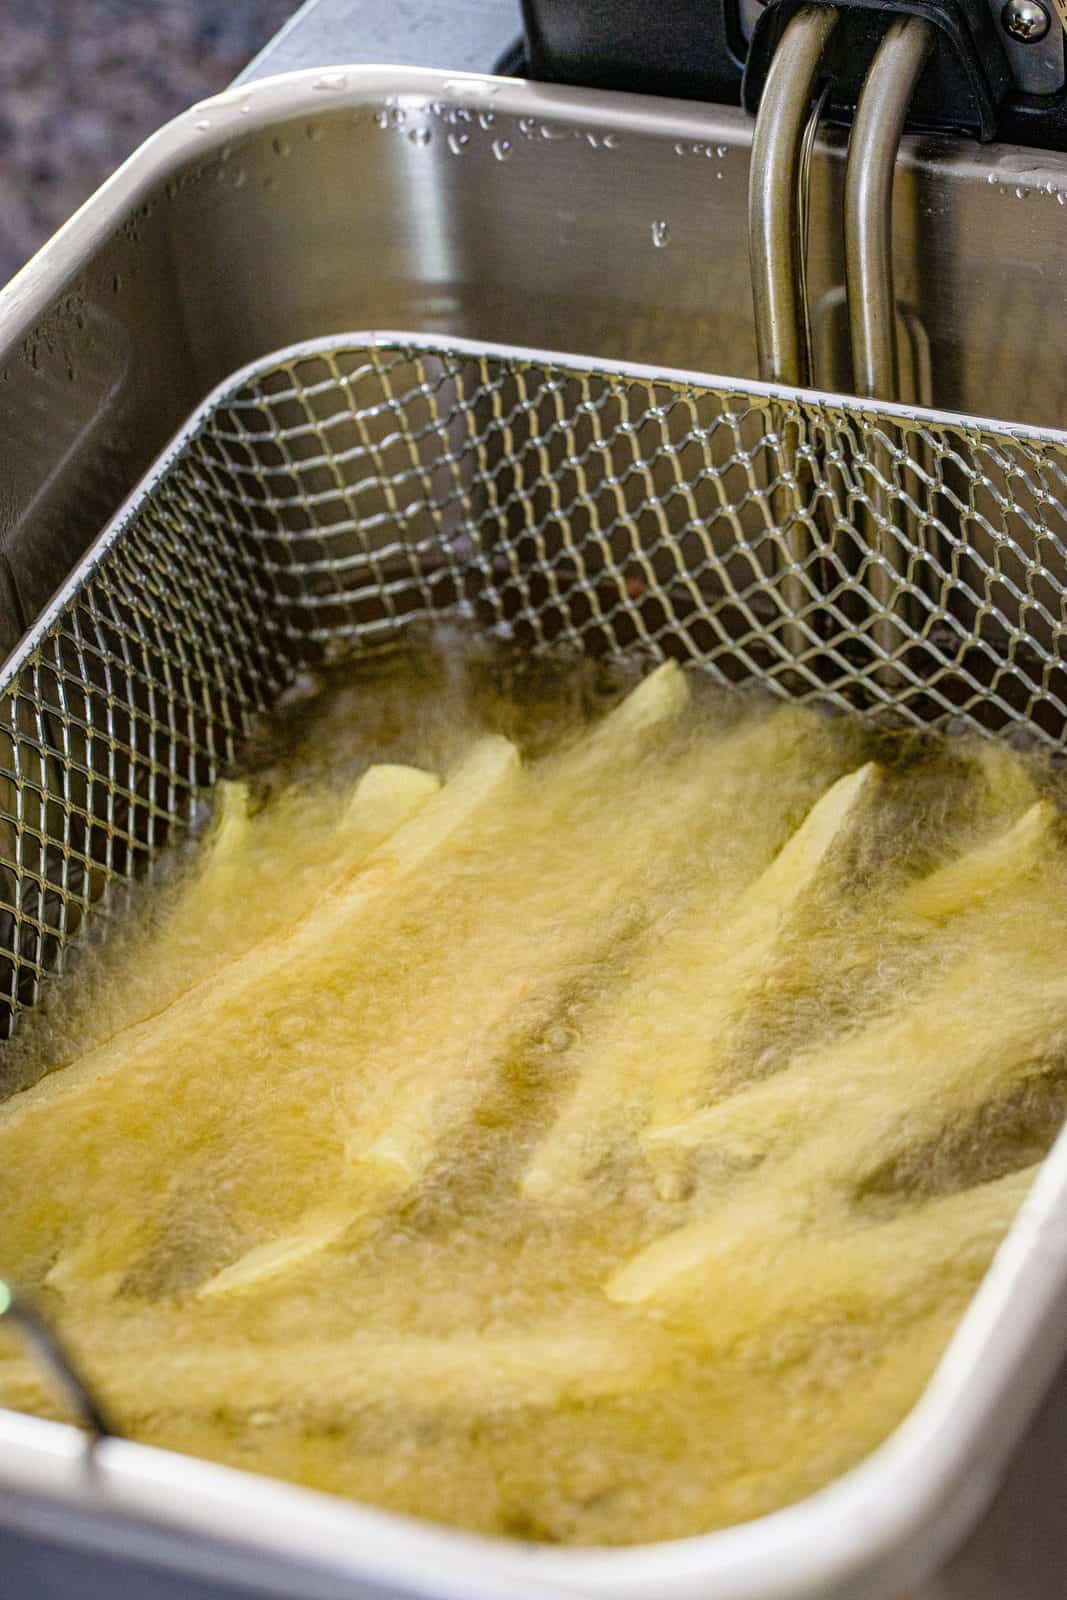 sliced potatoes shown bubbling in oil in a deep fryer